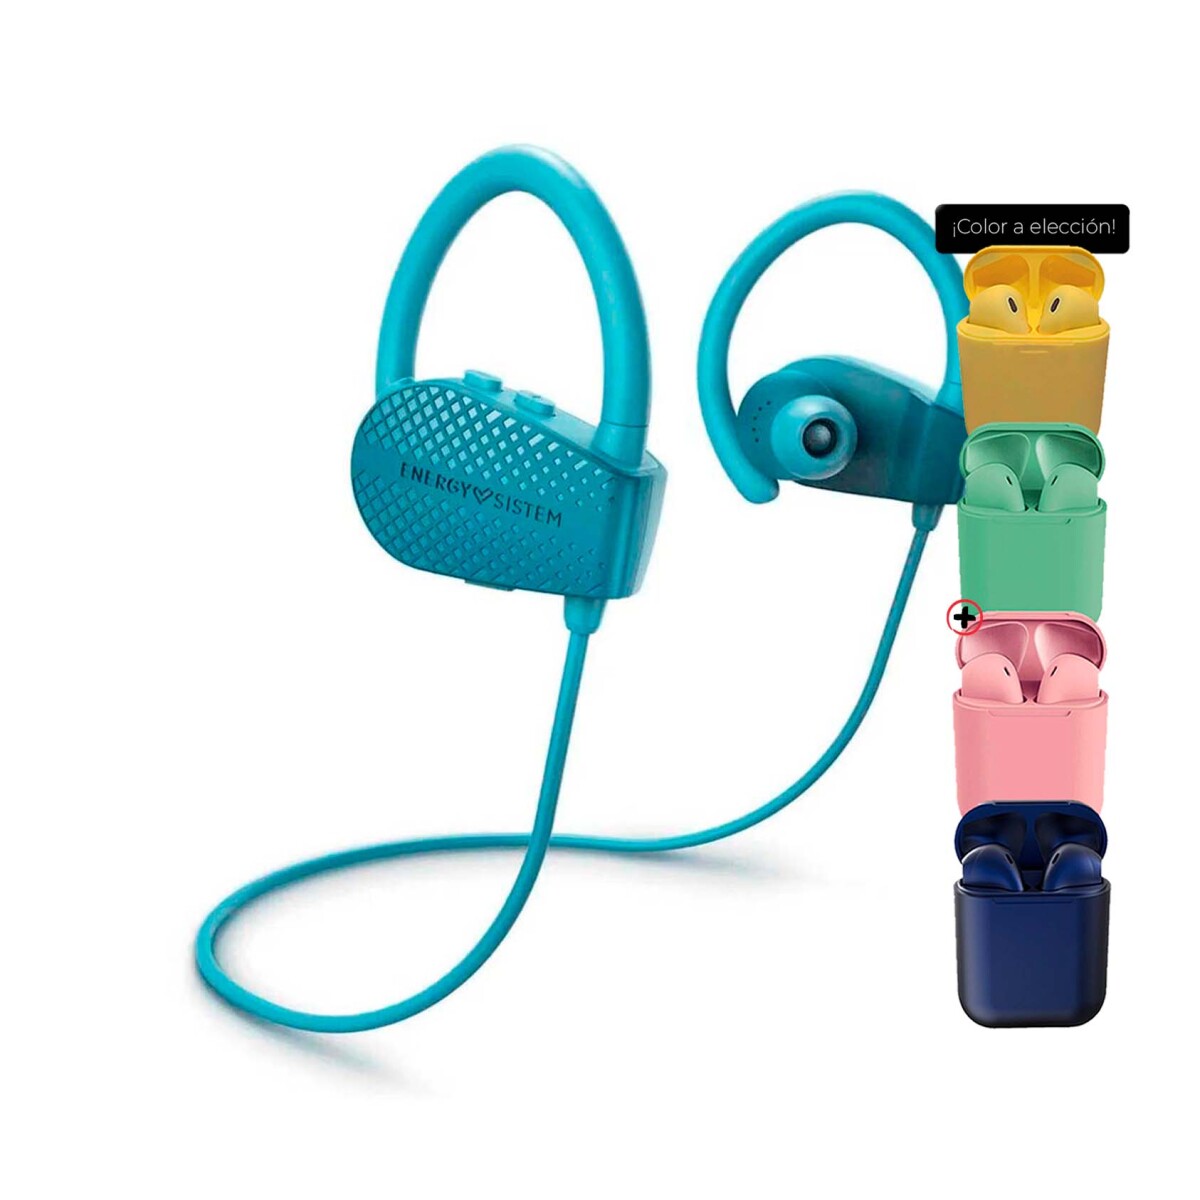 Auriculares Energy Sistem Bluetooth Sport 1 + 451777 + Auriculares - Azul 